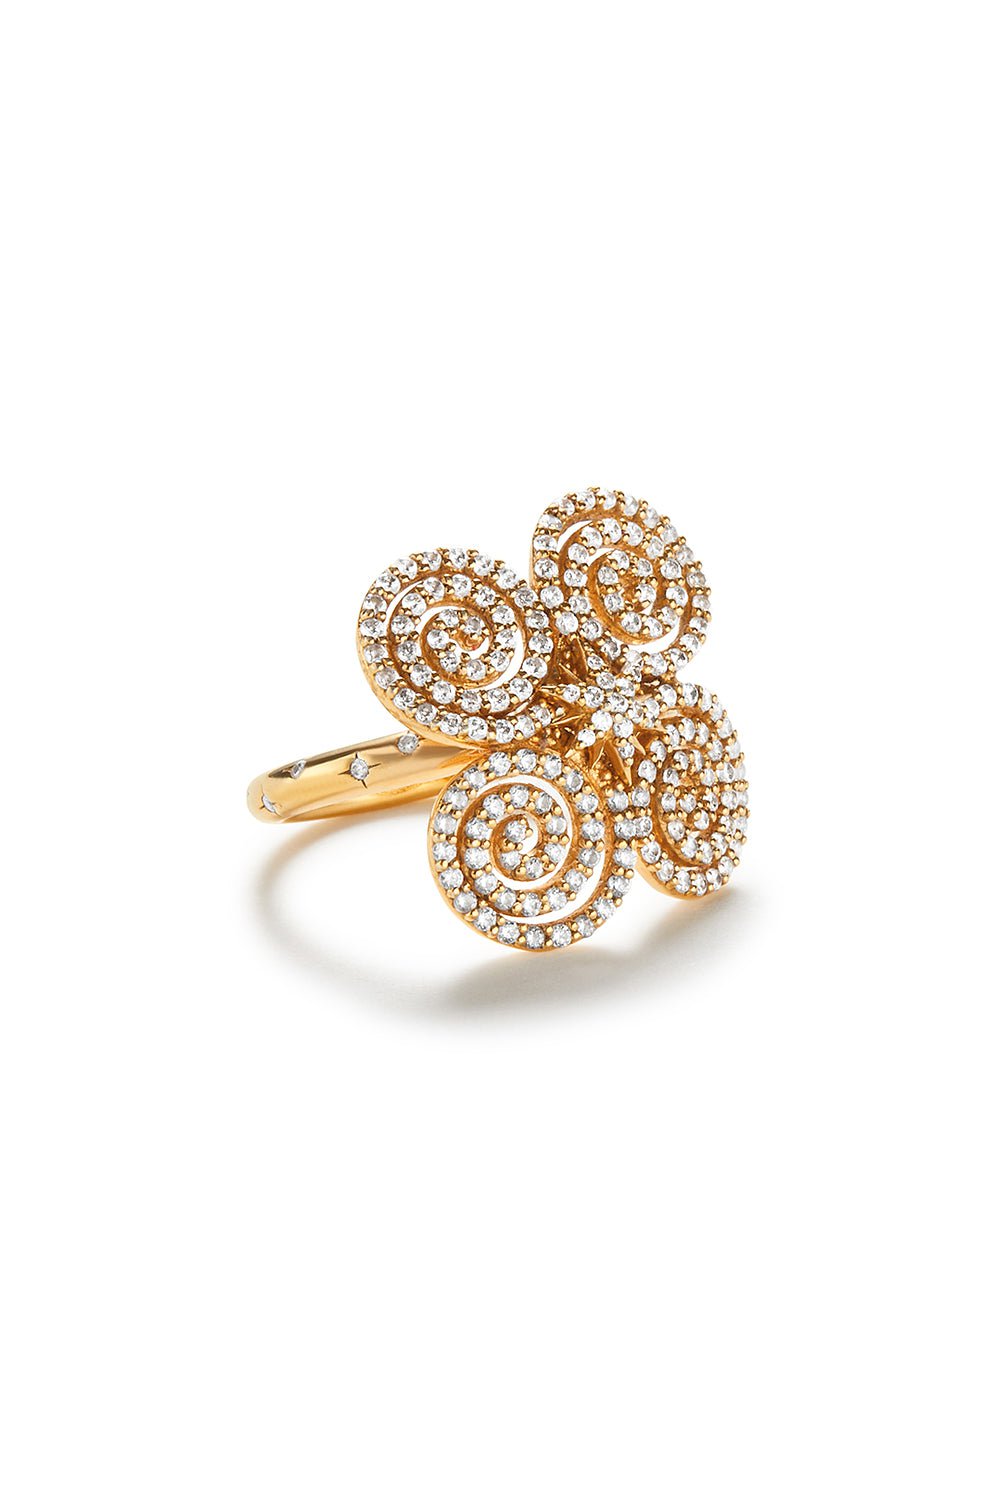 Amina Sorel Fine Jewelry-Continuum Diamond Lush Pave Ring-